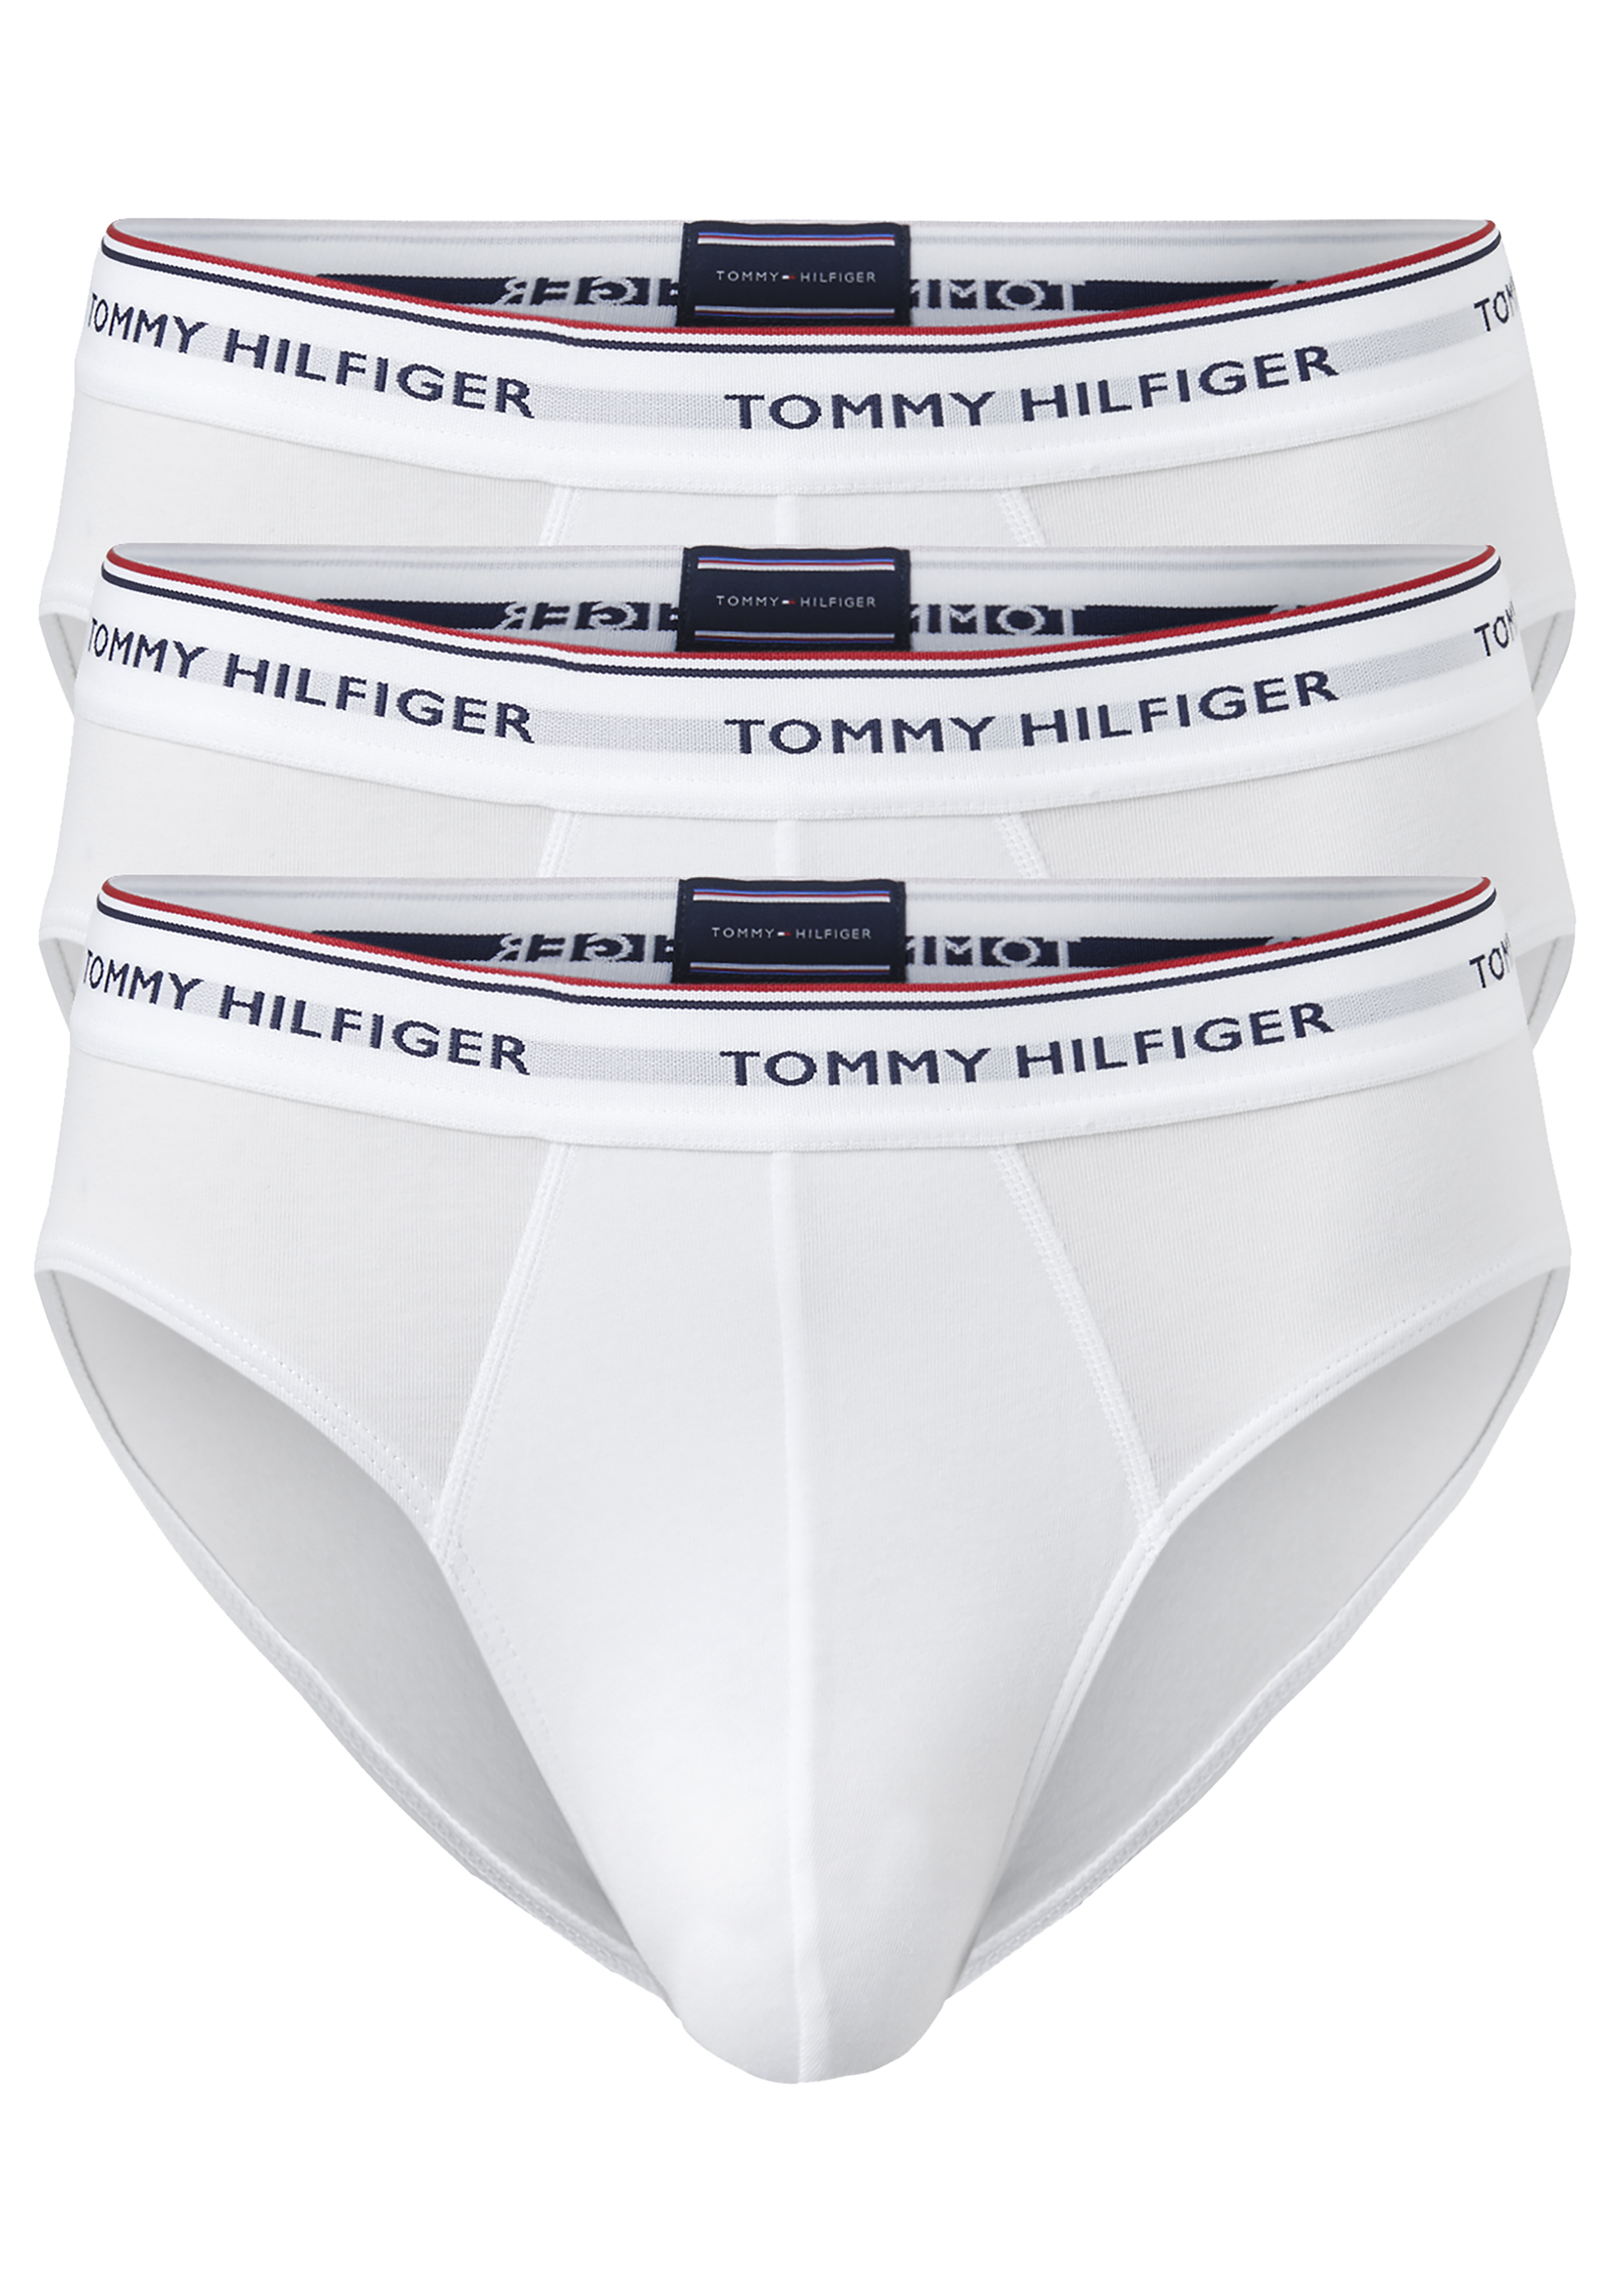 stok Klik melk wit Tommy Hilfiger slips (3-pack), wit - Gratis bezorgd